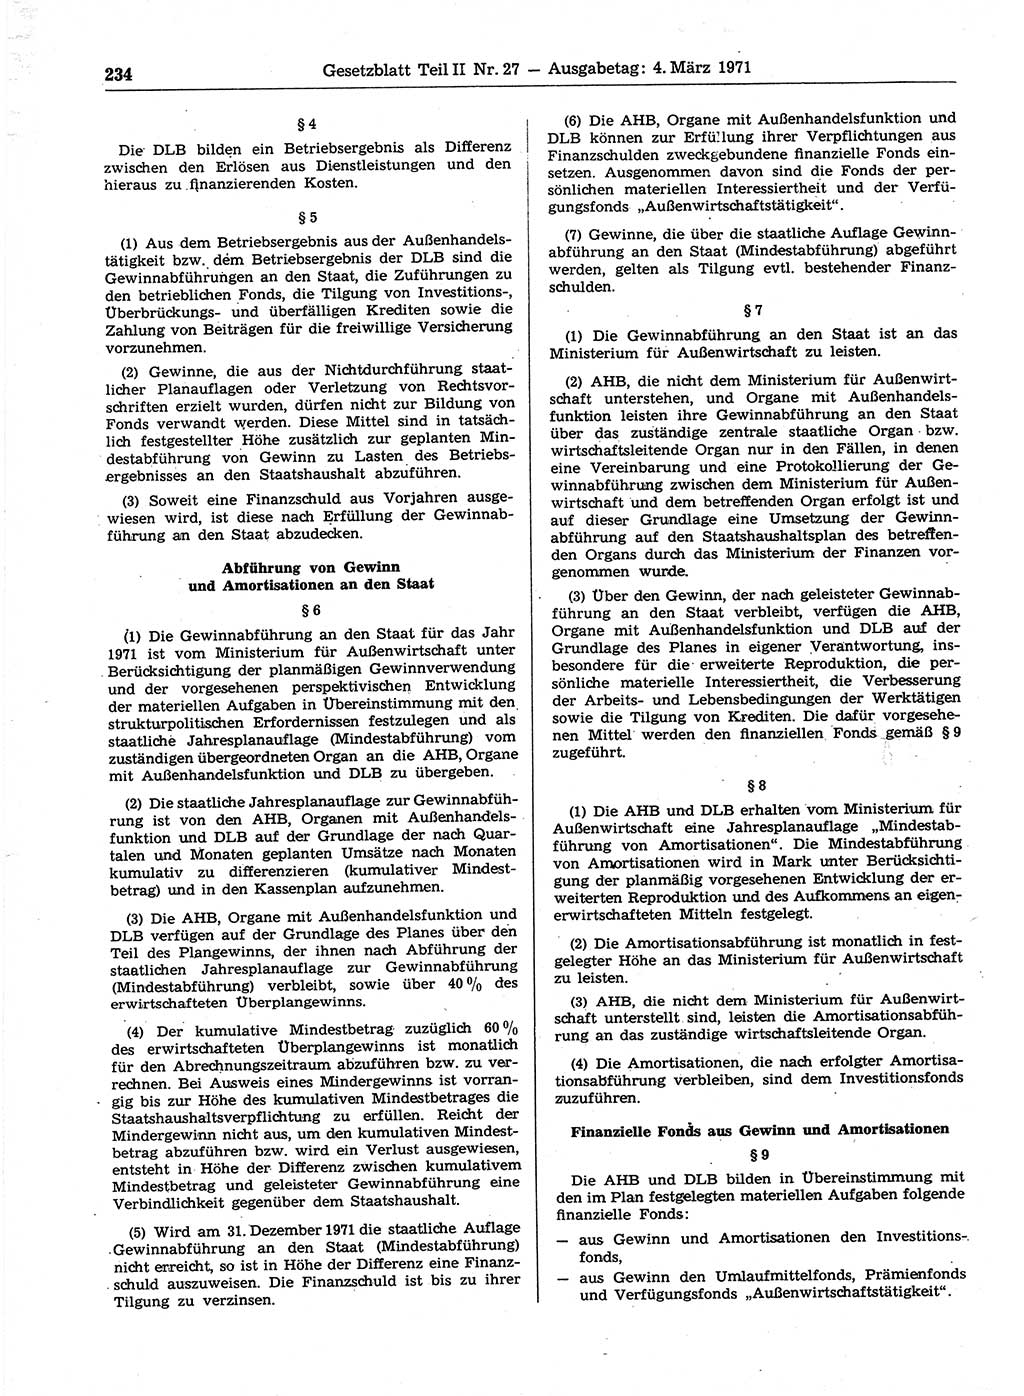 Gesetzblatt (GBl.) der Deutschen Demokratischen Republik (DDR) Teil ⅠⅠ 1971, Seite 234 (GBl. DDR ⅠⅠ 1971, S. 234)